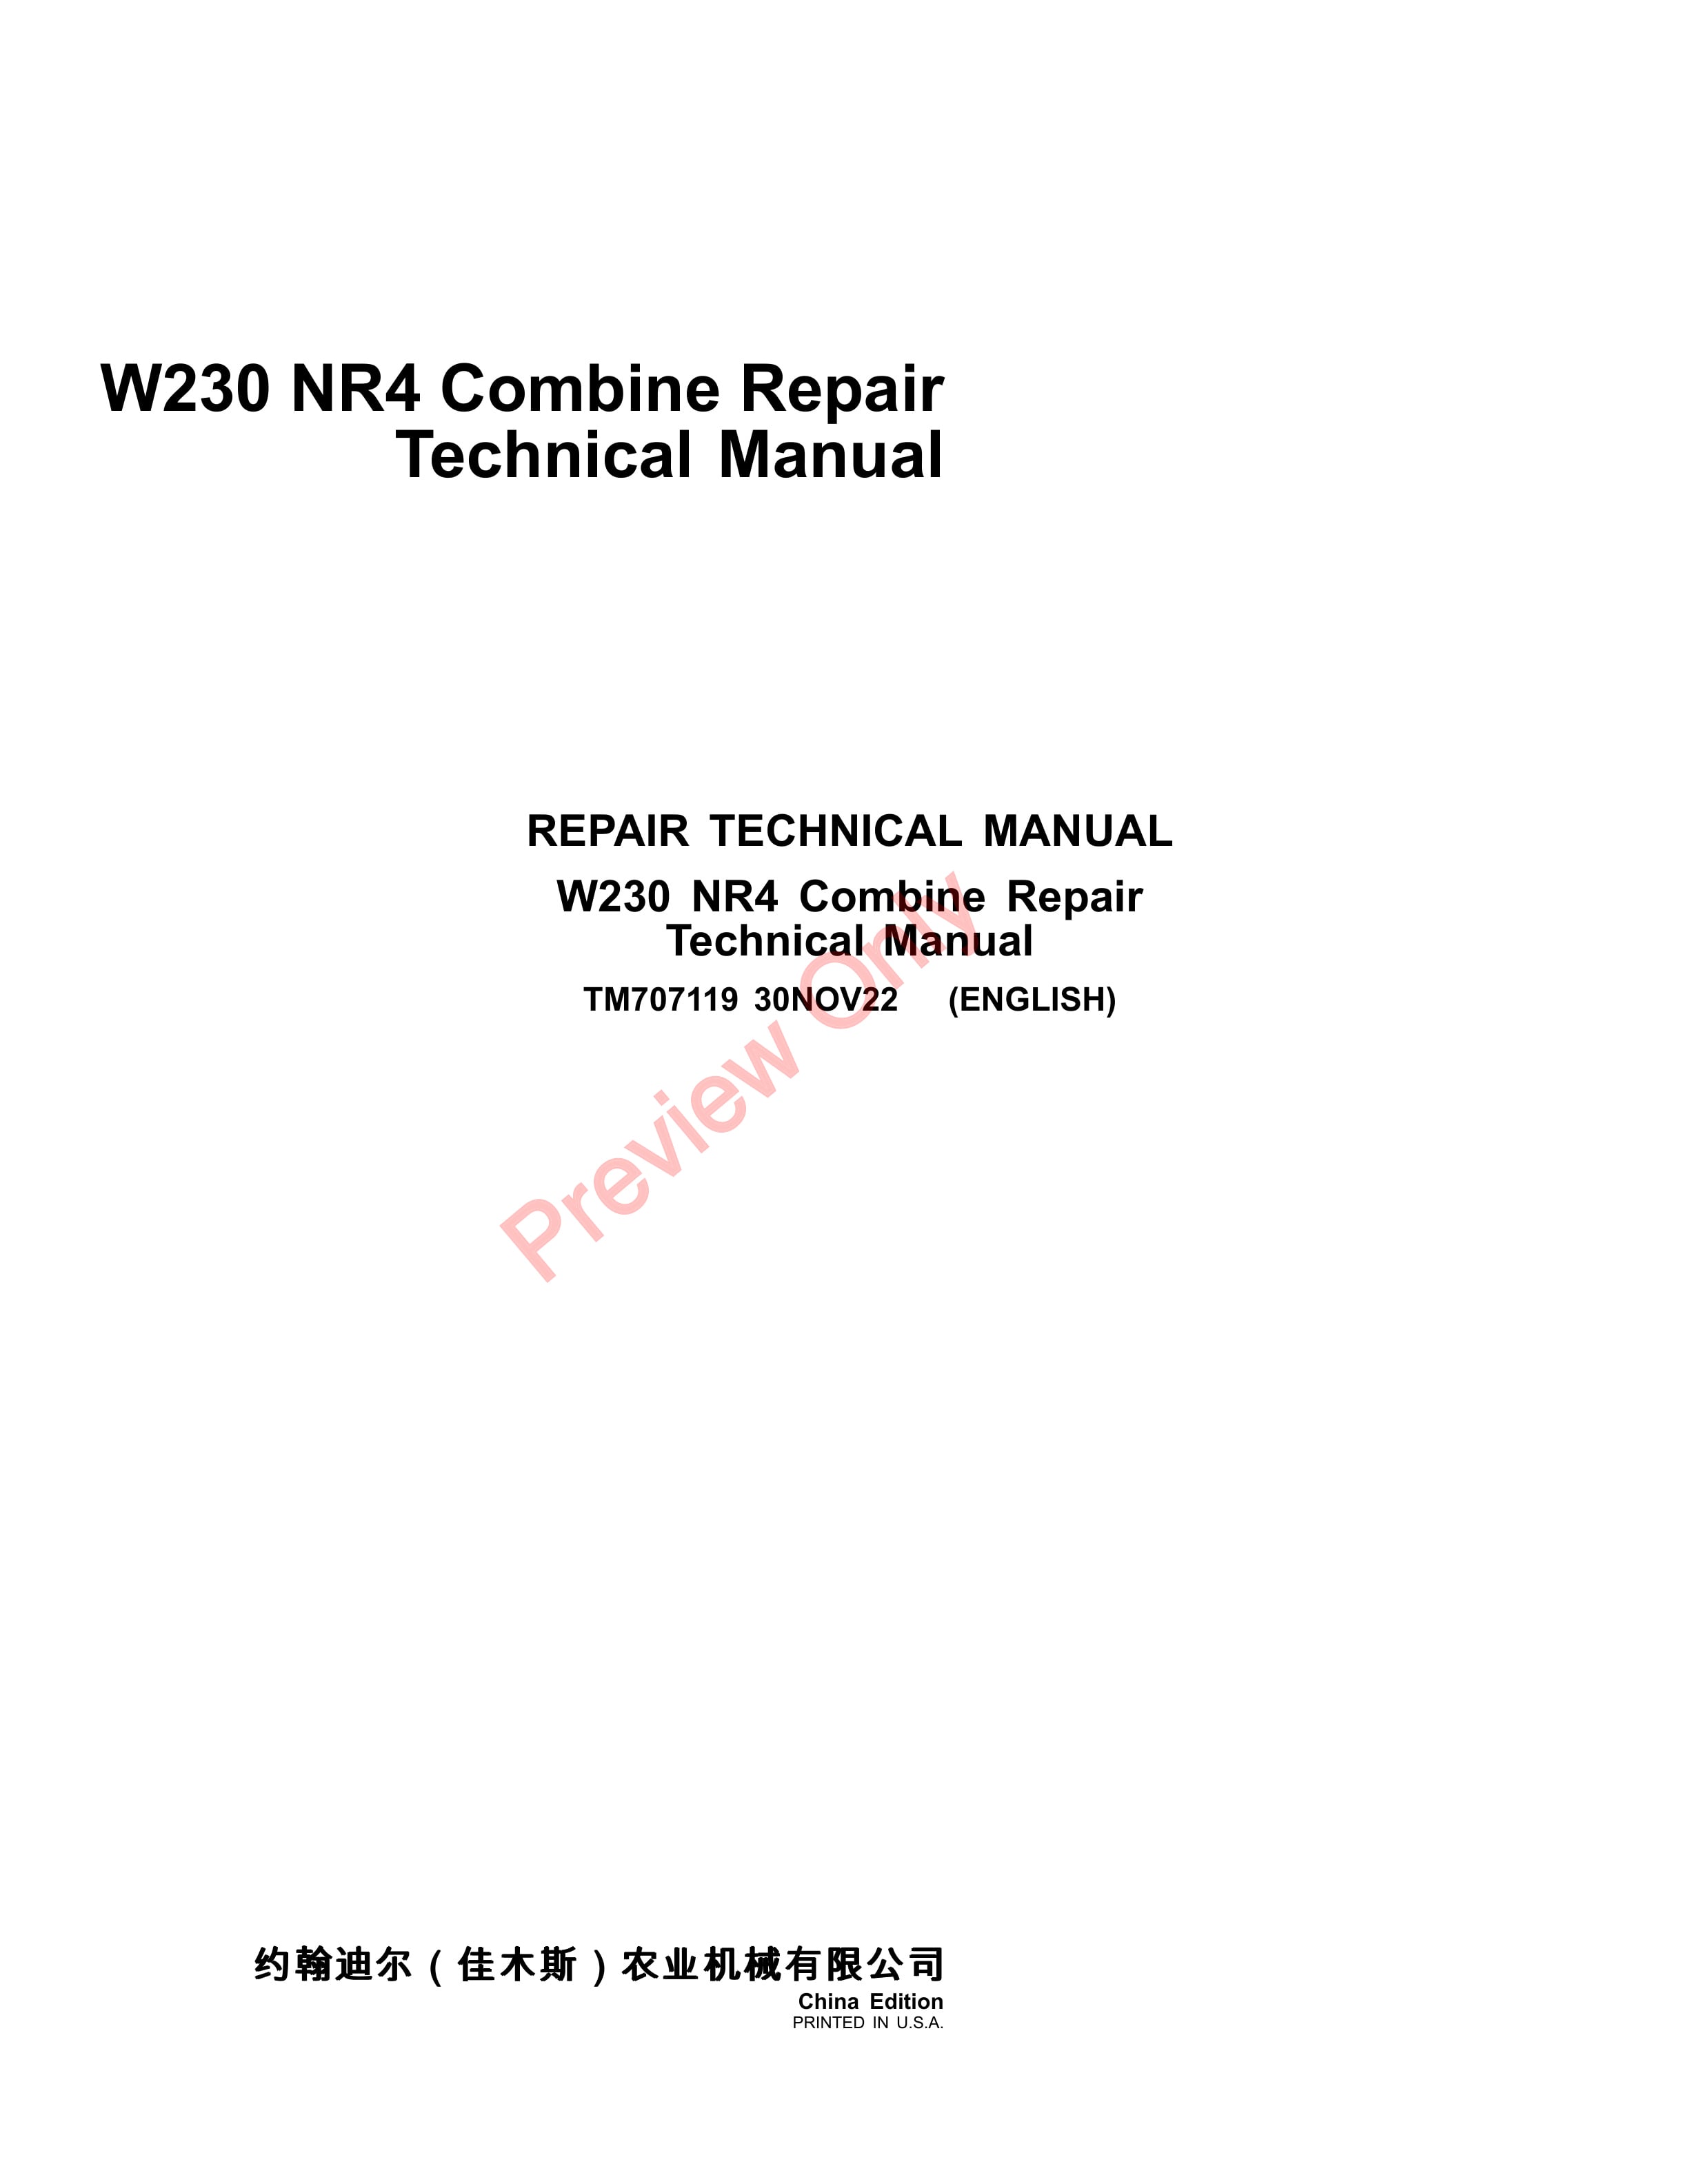 John Deere W230 NR4 Combine Repair Technical Manual TM707119 30NOV22 1